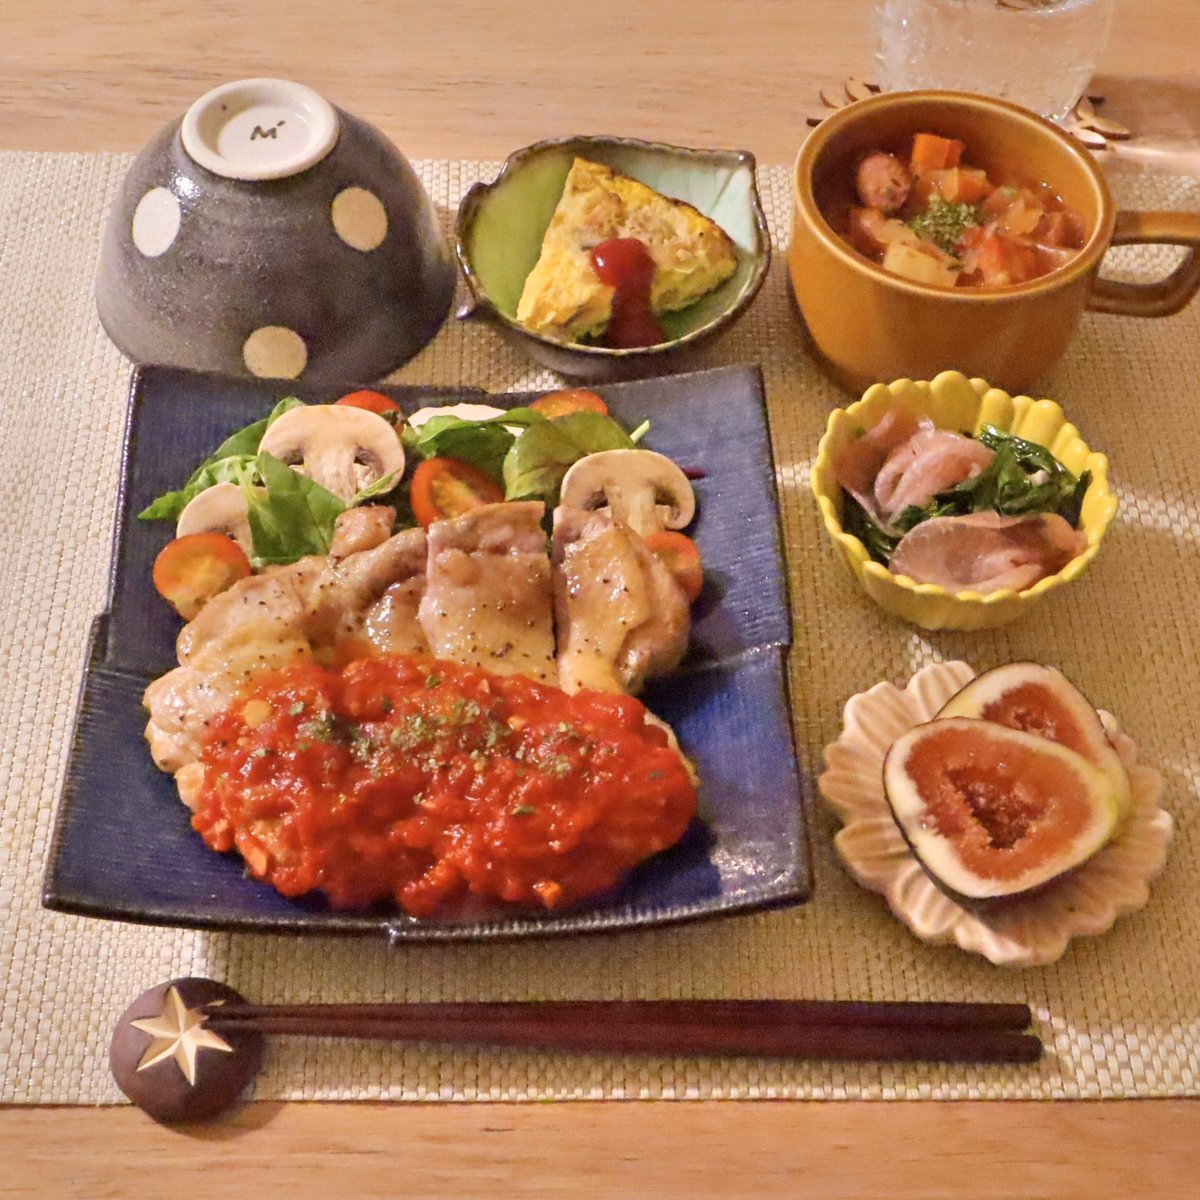 Mariko 料理が苦手な人を応援 Sur Twitter 盛り付けのコツを記事にしました インスタグラマー流 料理を美味しそうに 盛り付ける3つのコツ 5色を揃えた食卓にする お皿をしっかり選ぶ 高さを出して盛り付ける Https T Co Dnq2m7rava Https T